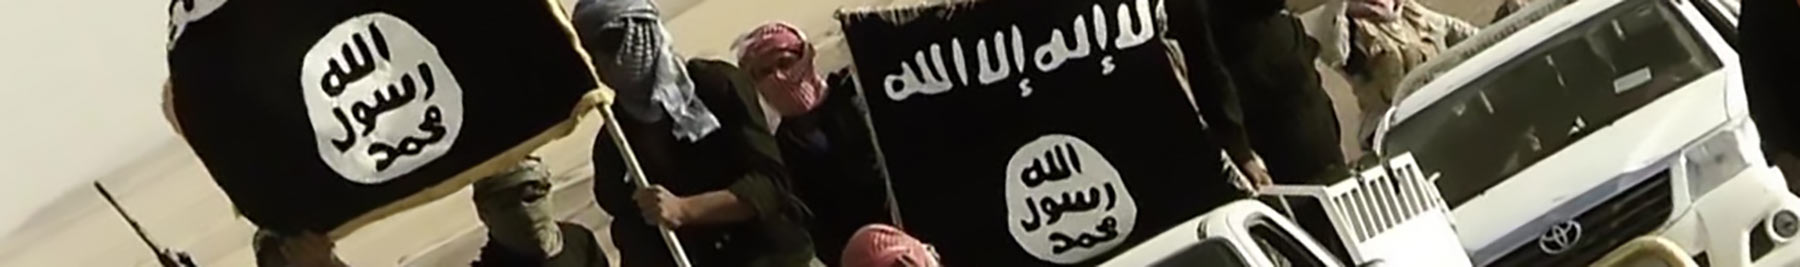 ISIS members on trucks